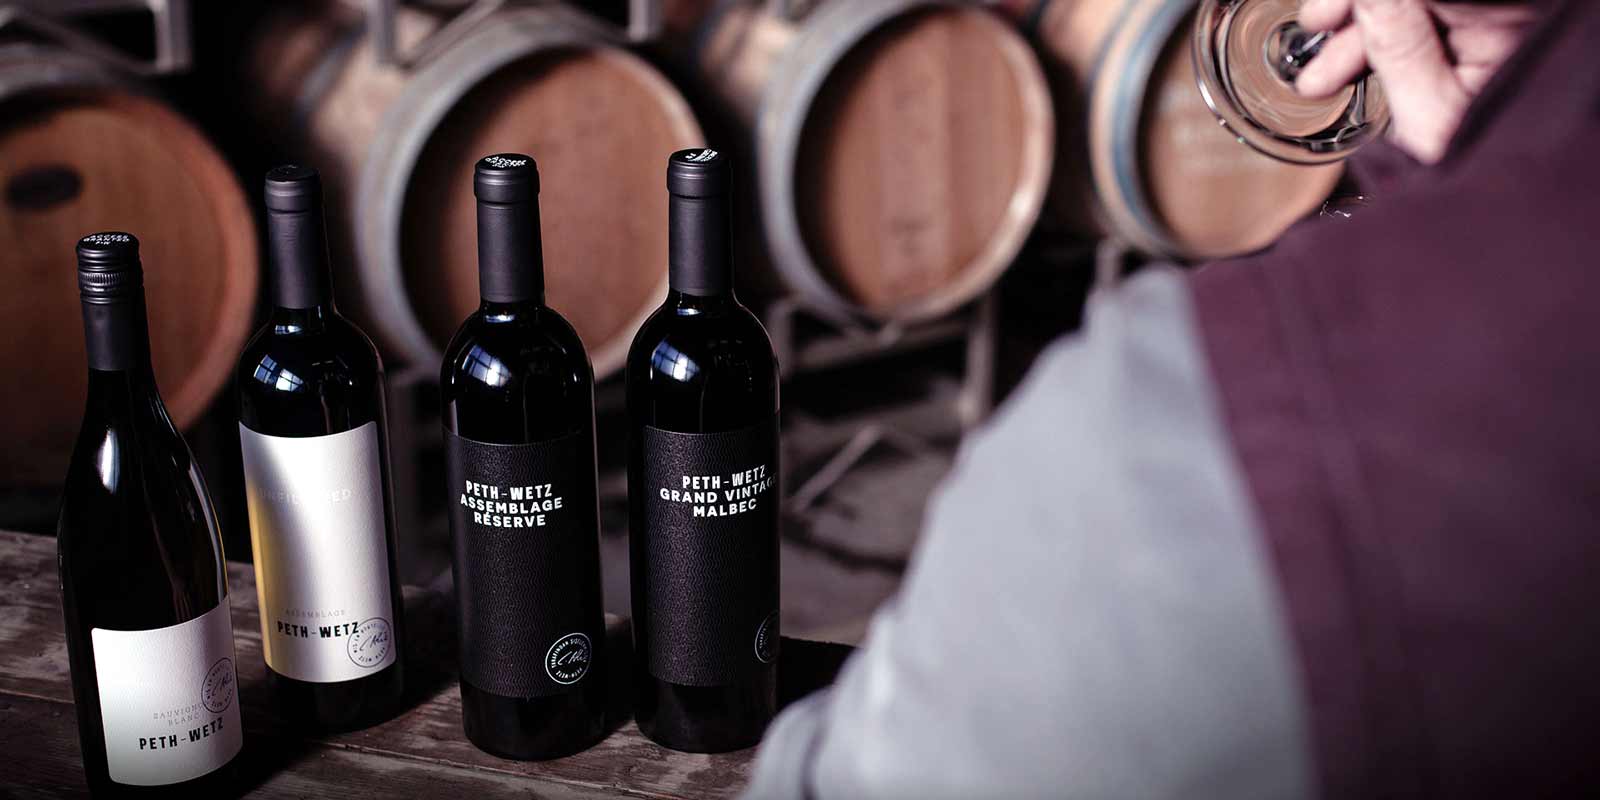 Vinhos de Peth-Wetz Na vinicola Peth-Wetz de 21 hectares em Bermersheim, Reno-Hesse, toda a familia se dedica a viticultura - agora na terceira geracao.